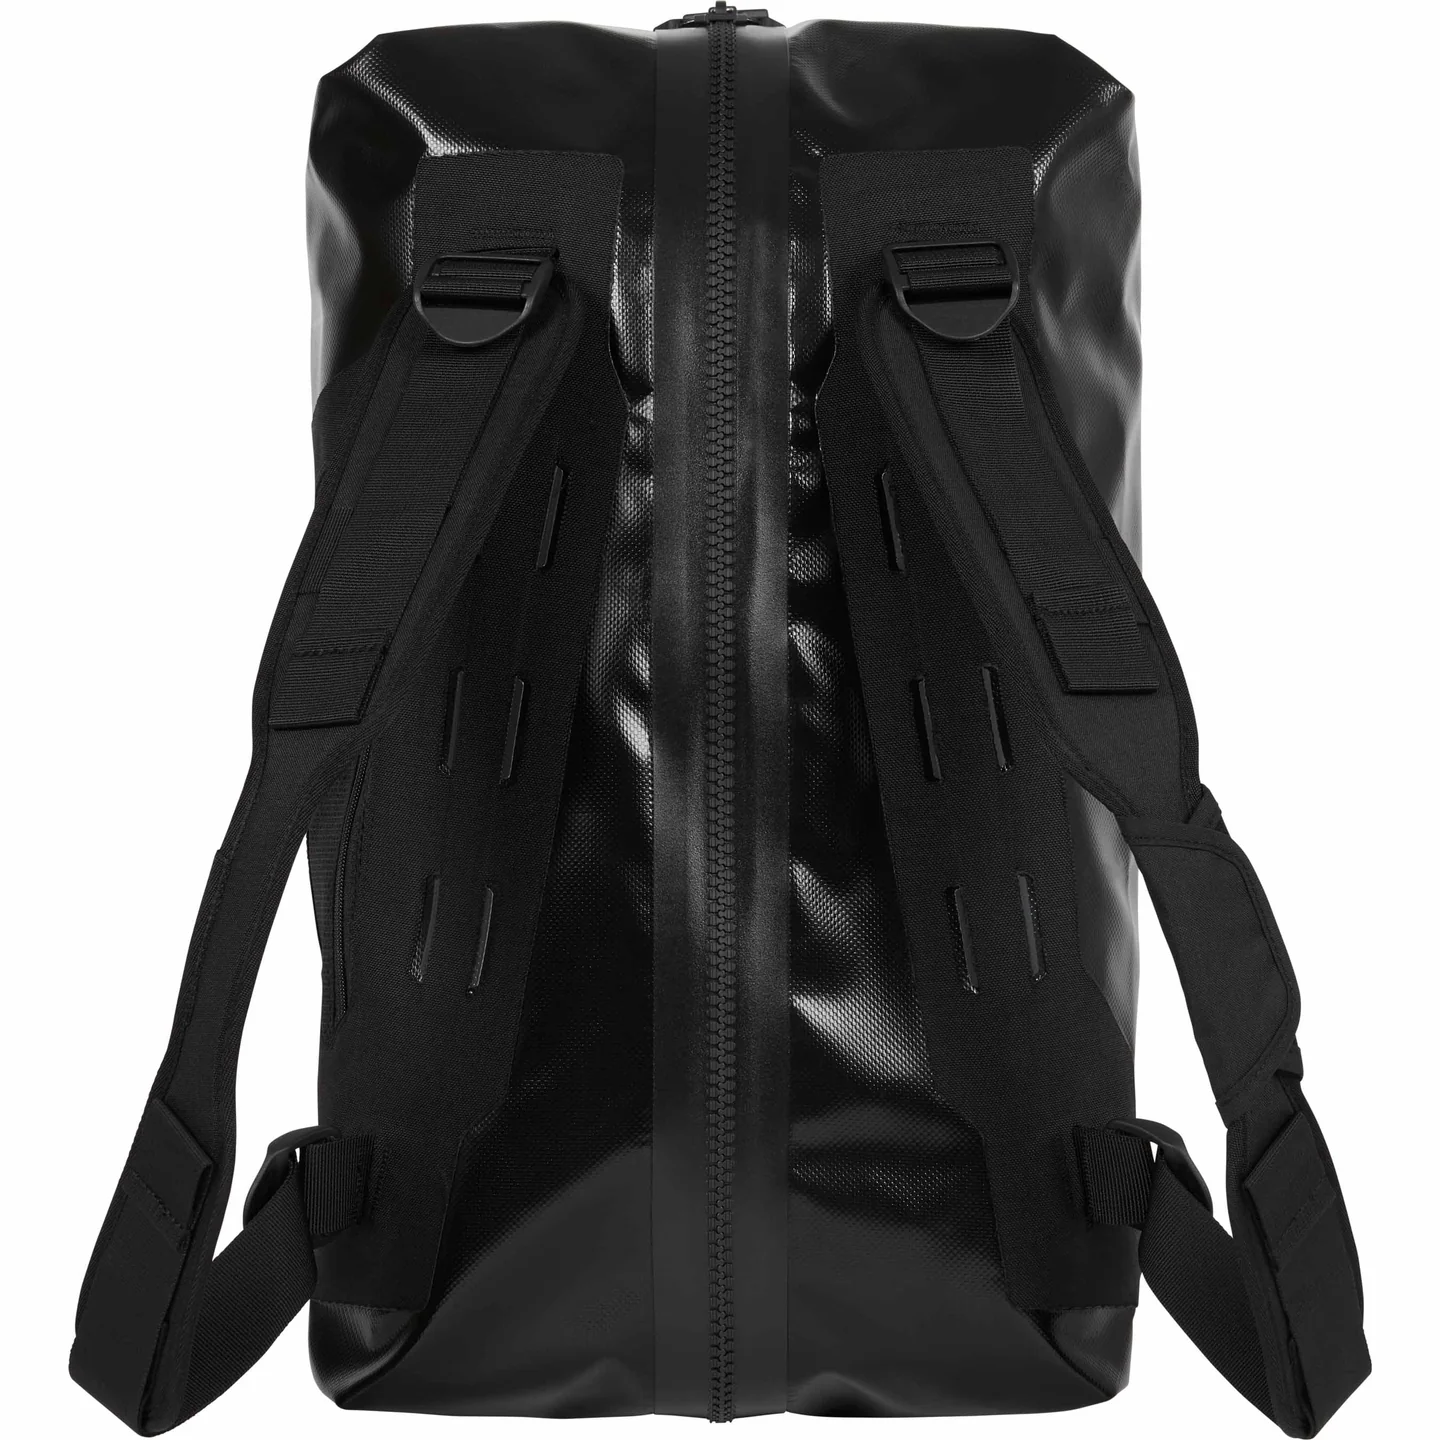 Supreme®/ORTLIEB Duffle Bag